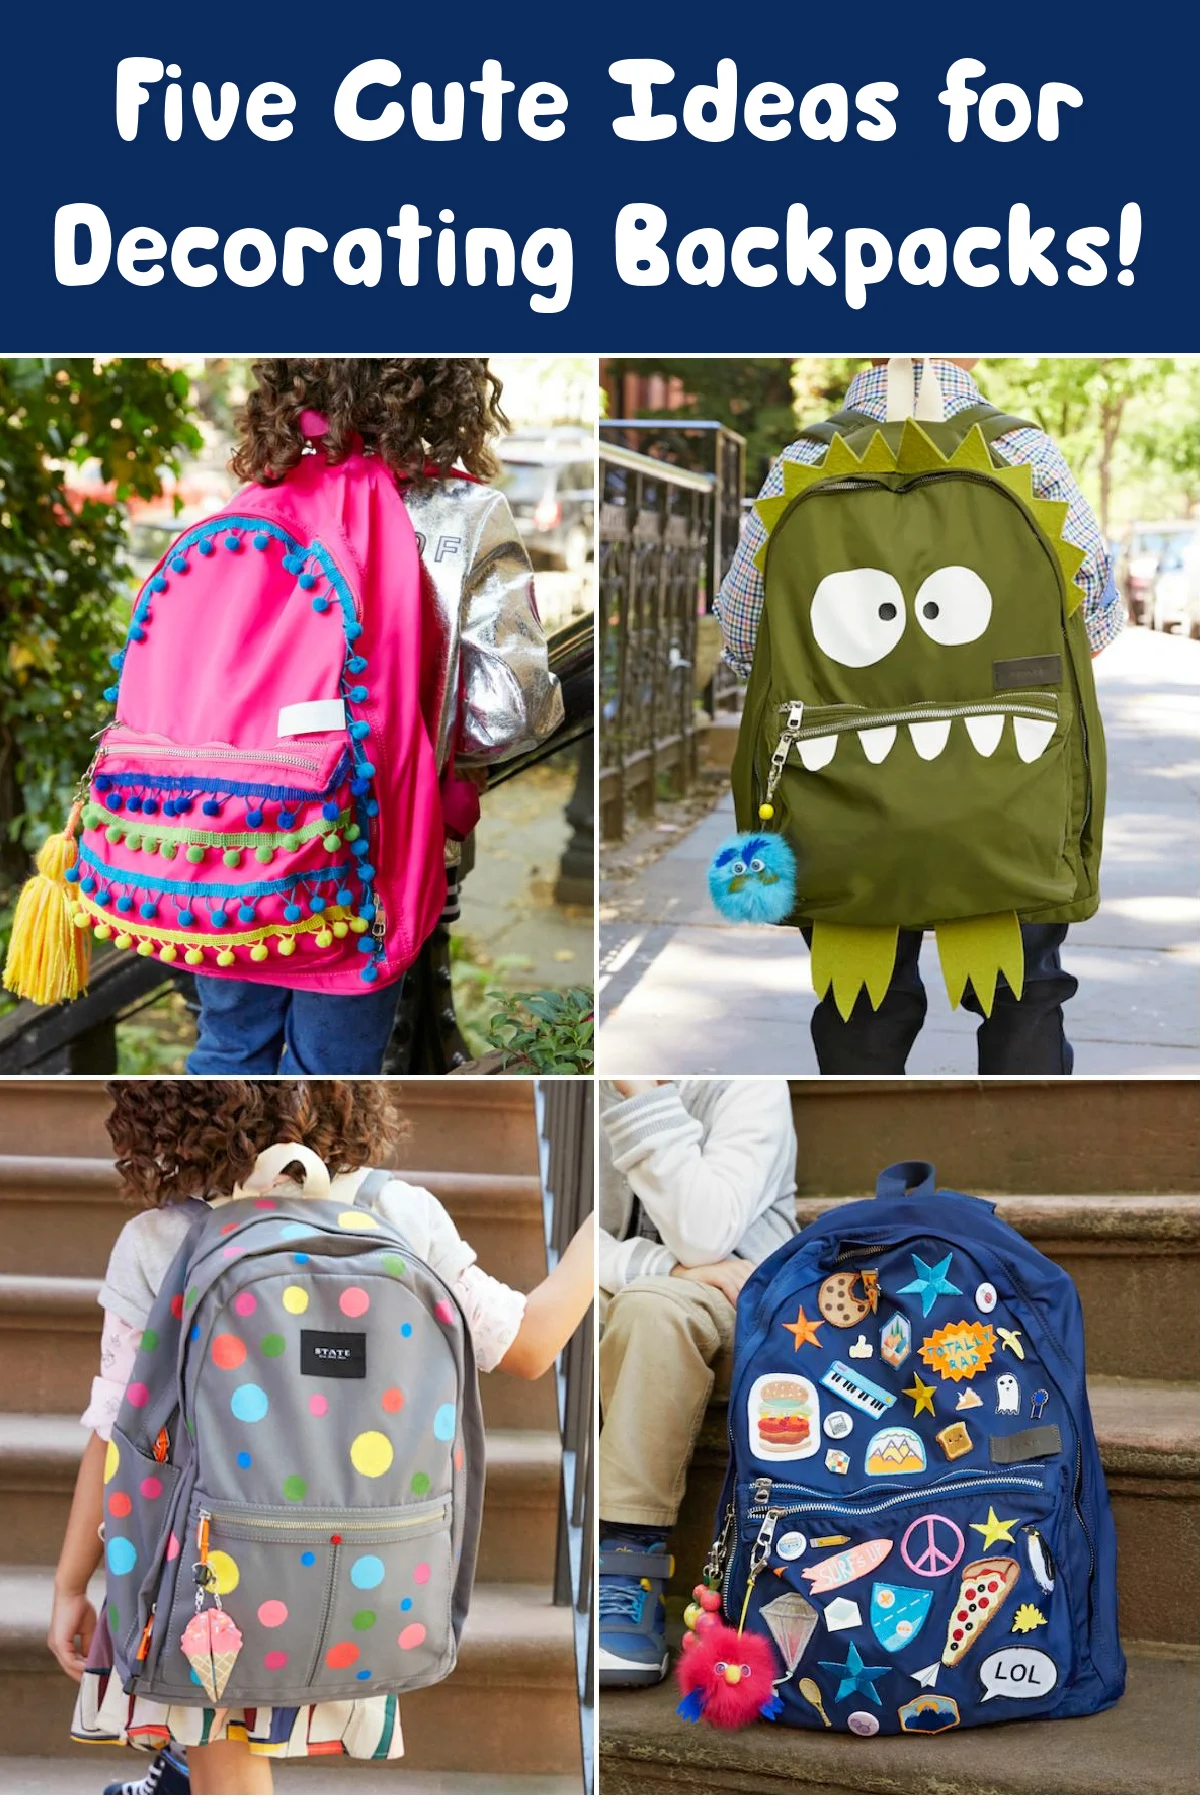 https://diycandy.b-cdn.net/wp-content/uploads/2022/07/Five-Cute-Ideas-for-Decorating-Backpacks.jpg.webp